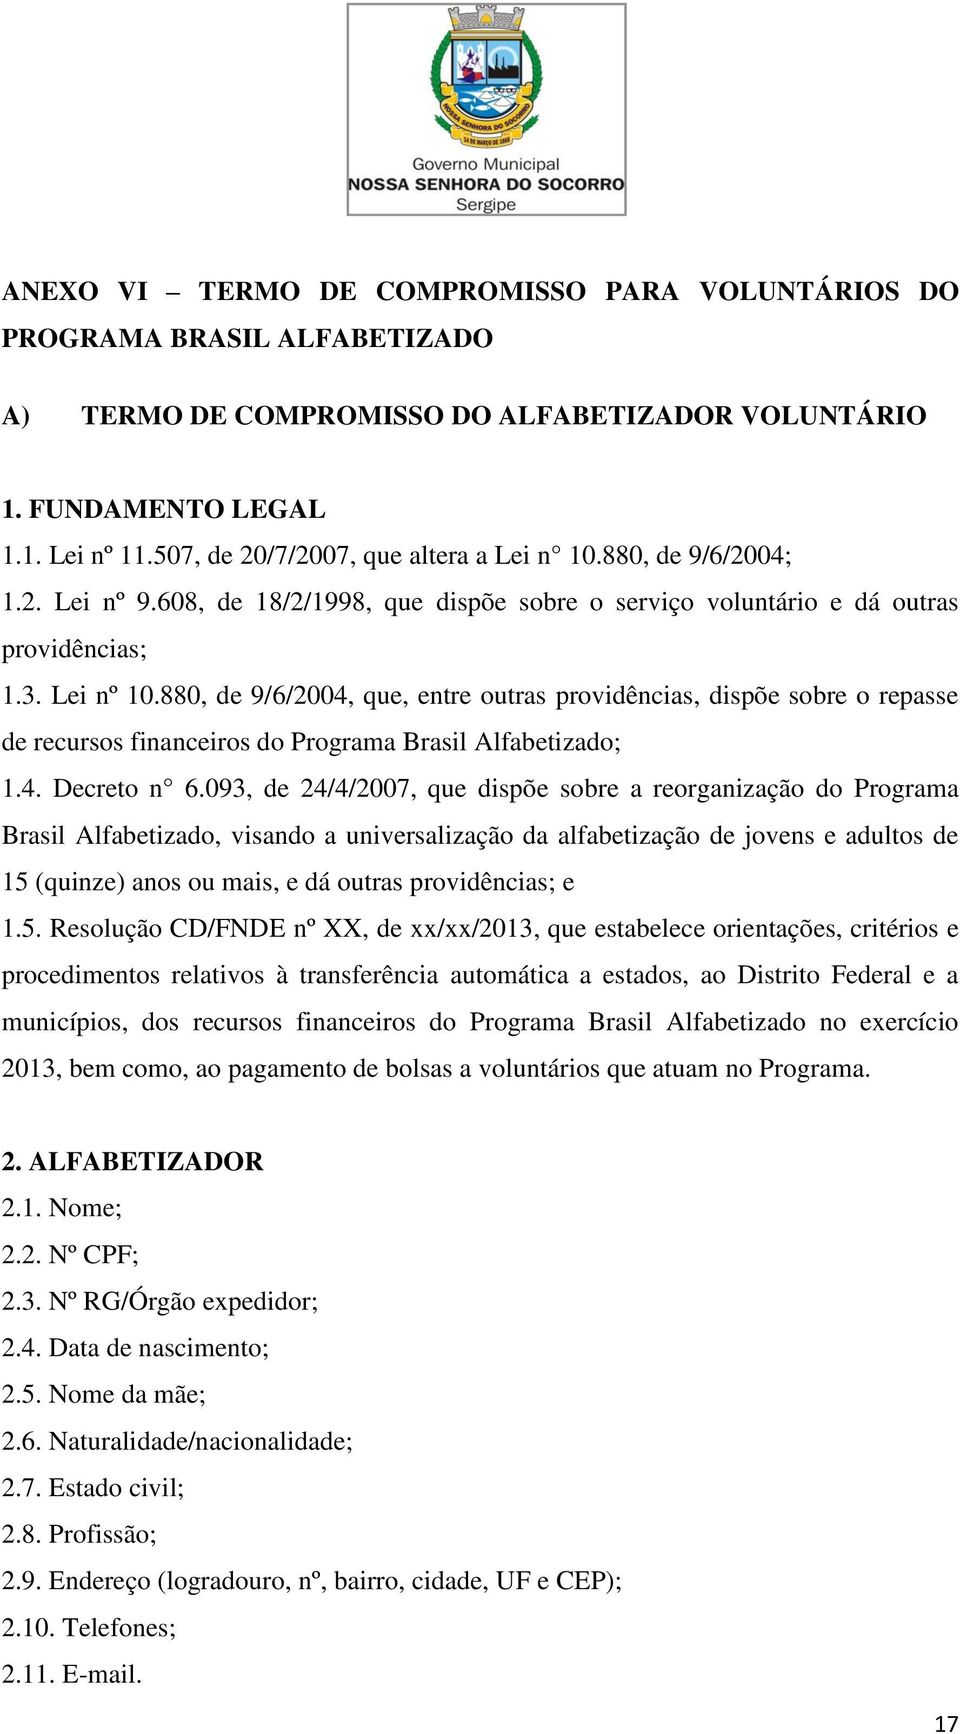 880, de 9/6/2004, que, entre outras providências, dispõe sobre o repasse de recursos financeiros do Programa Brasil Alfabetizado; 1.4. Decreto n 6.